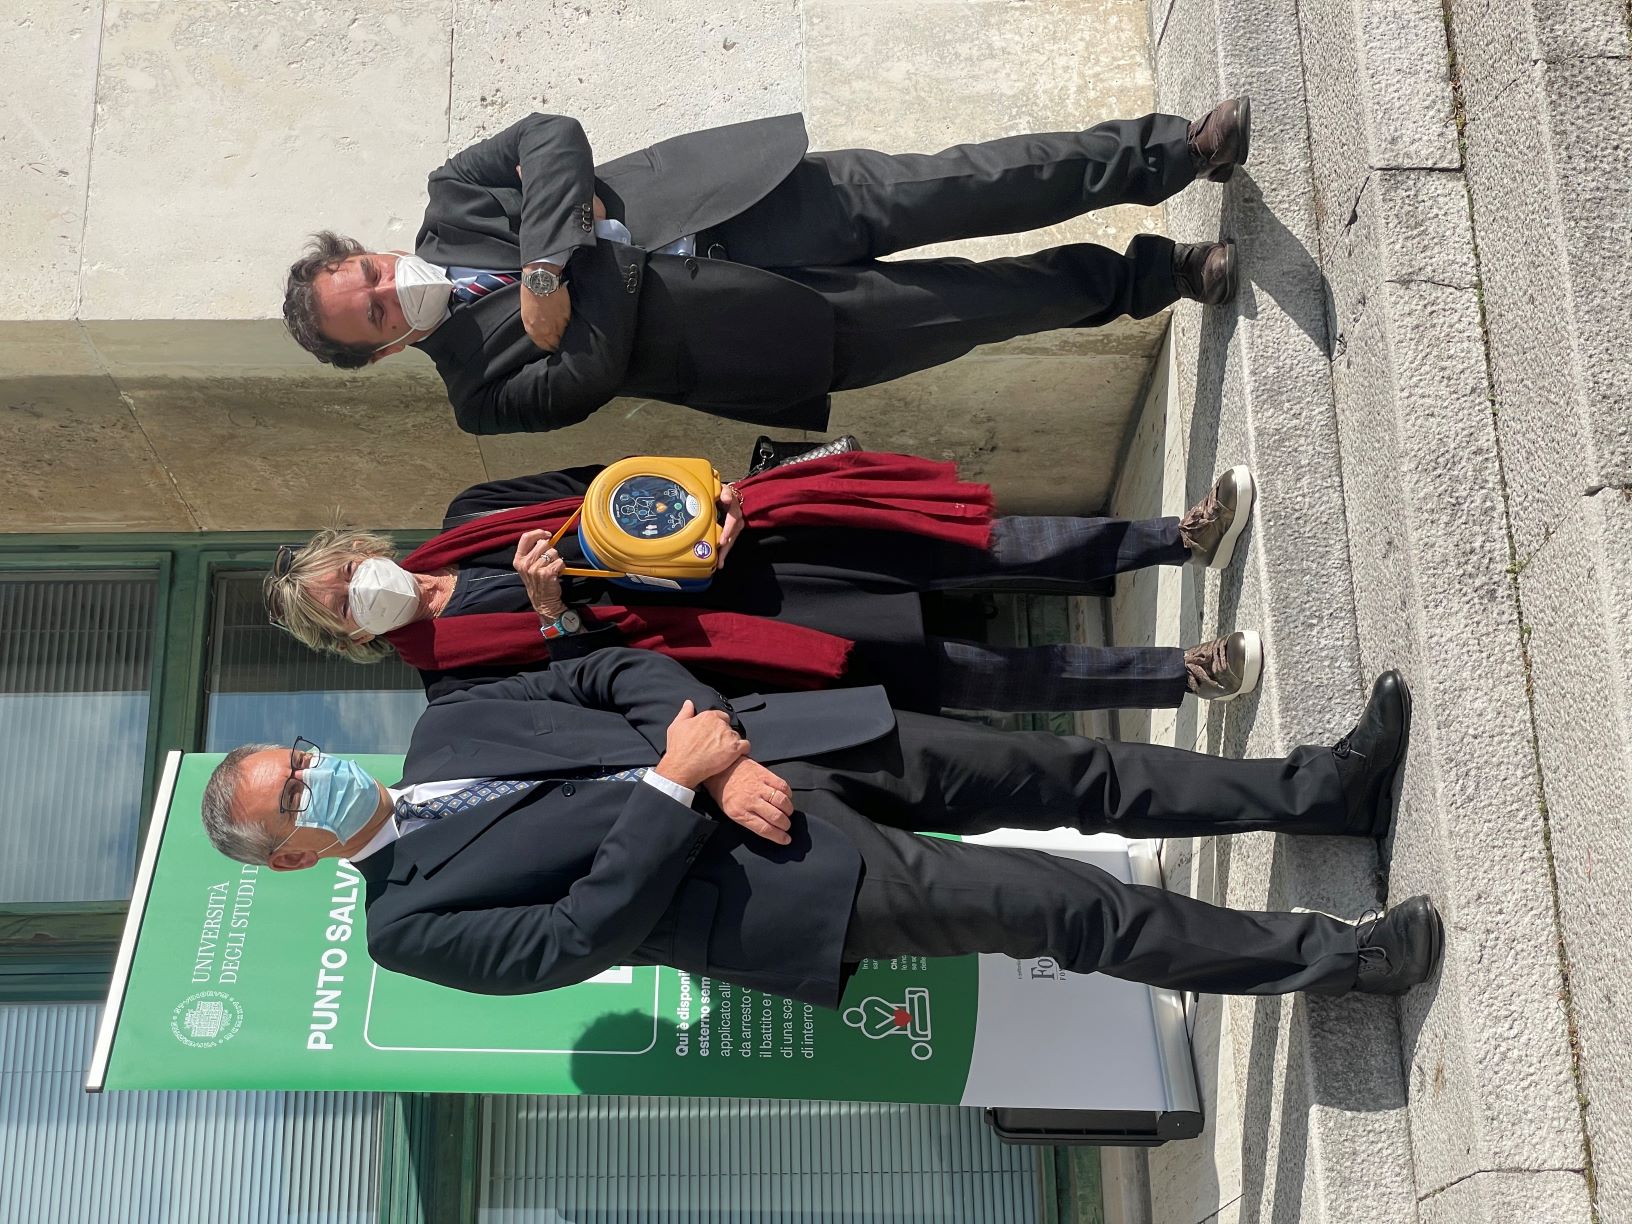 La Fondazione CRTrieste dona 25 defibrillatori semiautomatici esterni (DAE) all’Università degli Studi di Trieste